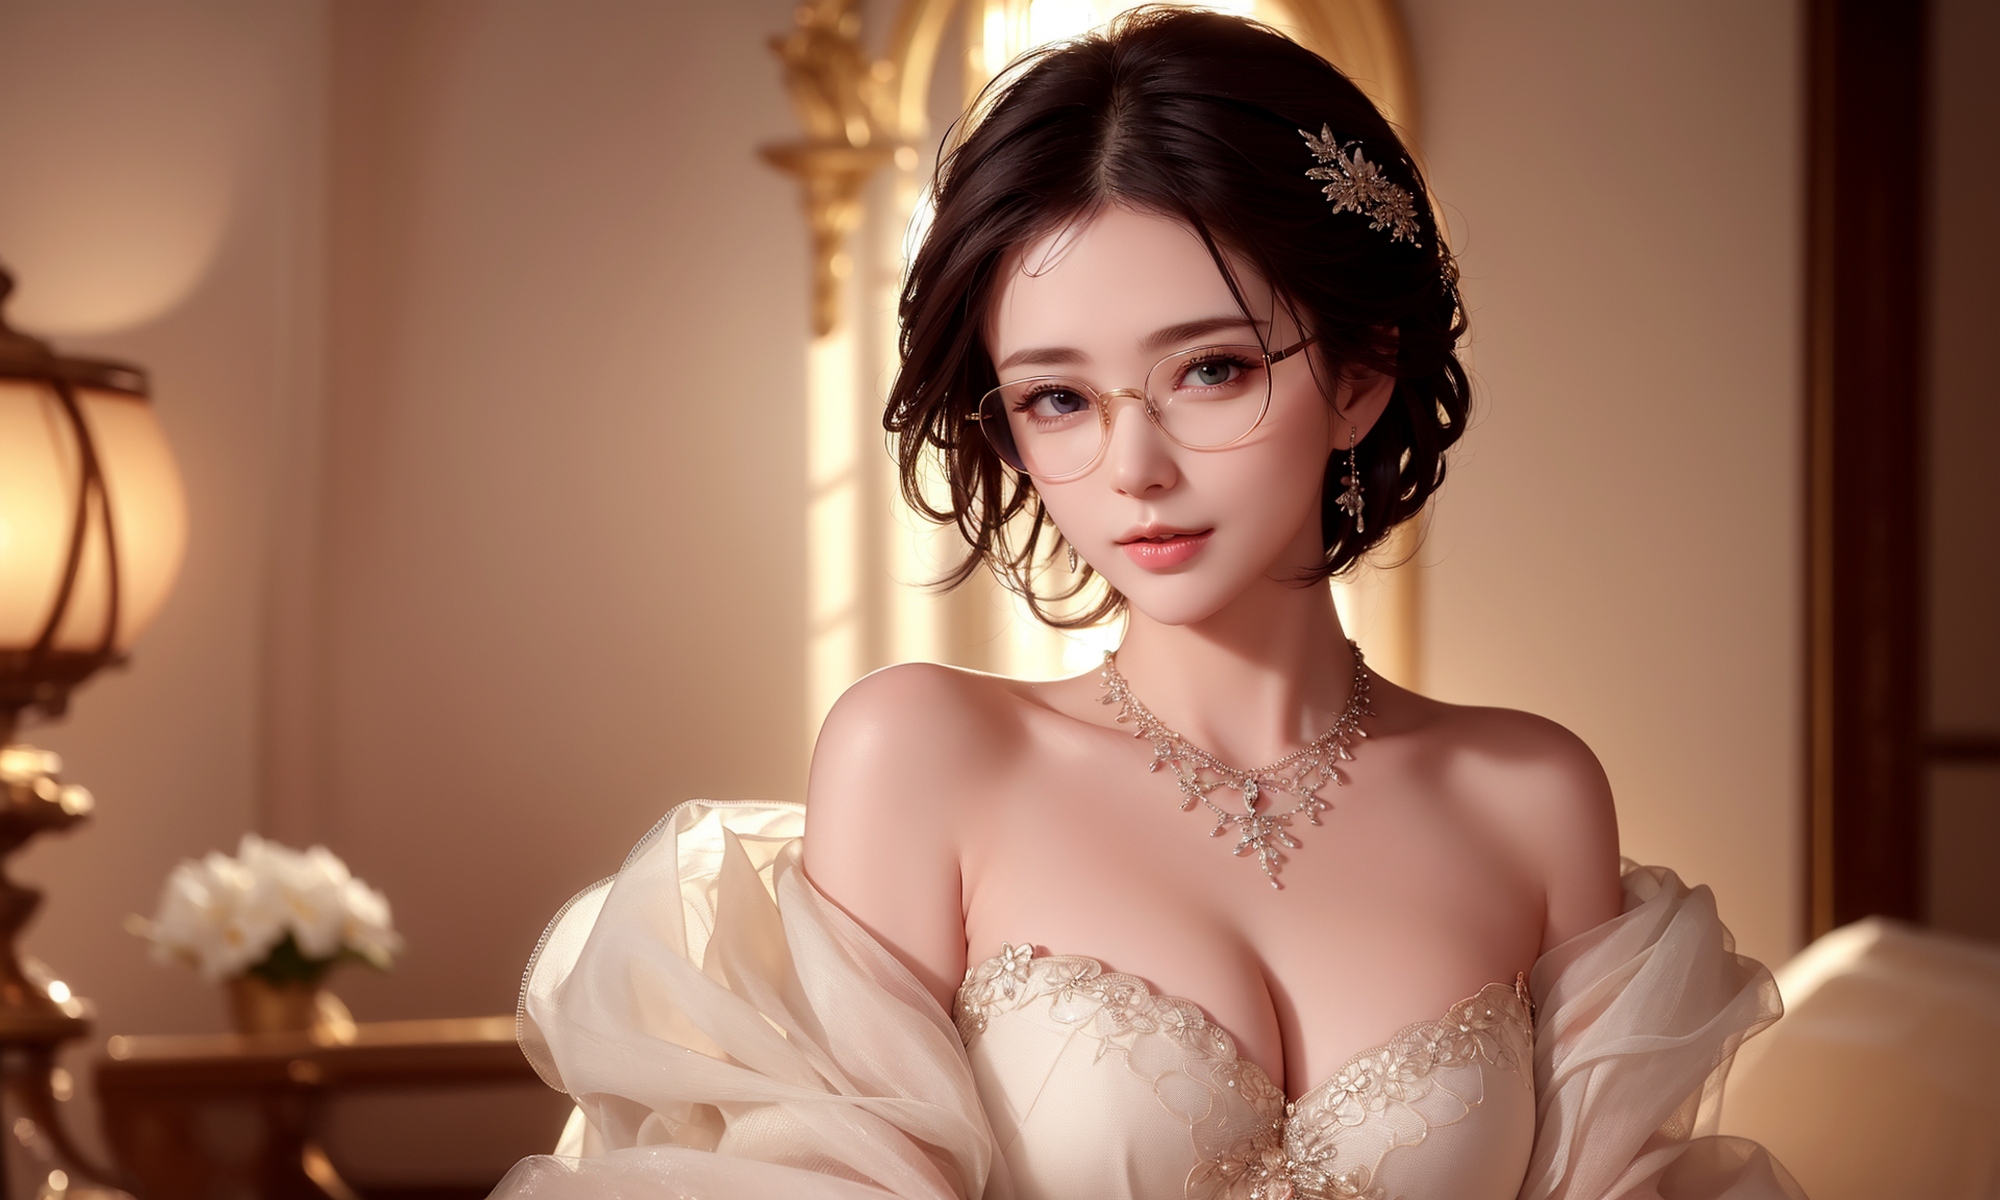 Азиатка в очках в свадебном платье · бесплатная фотография